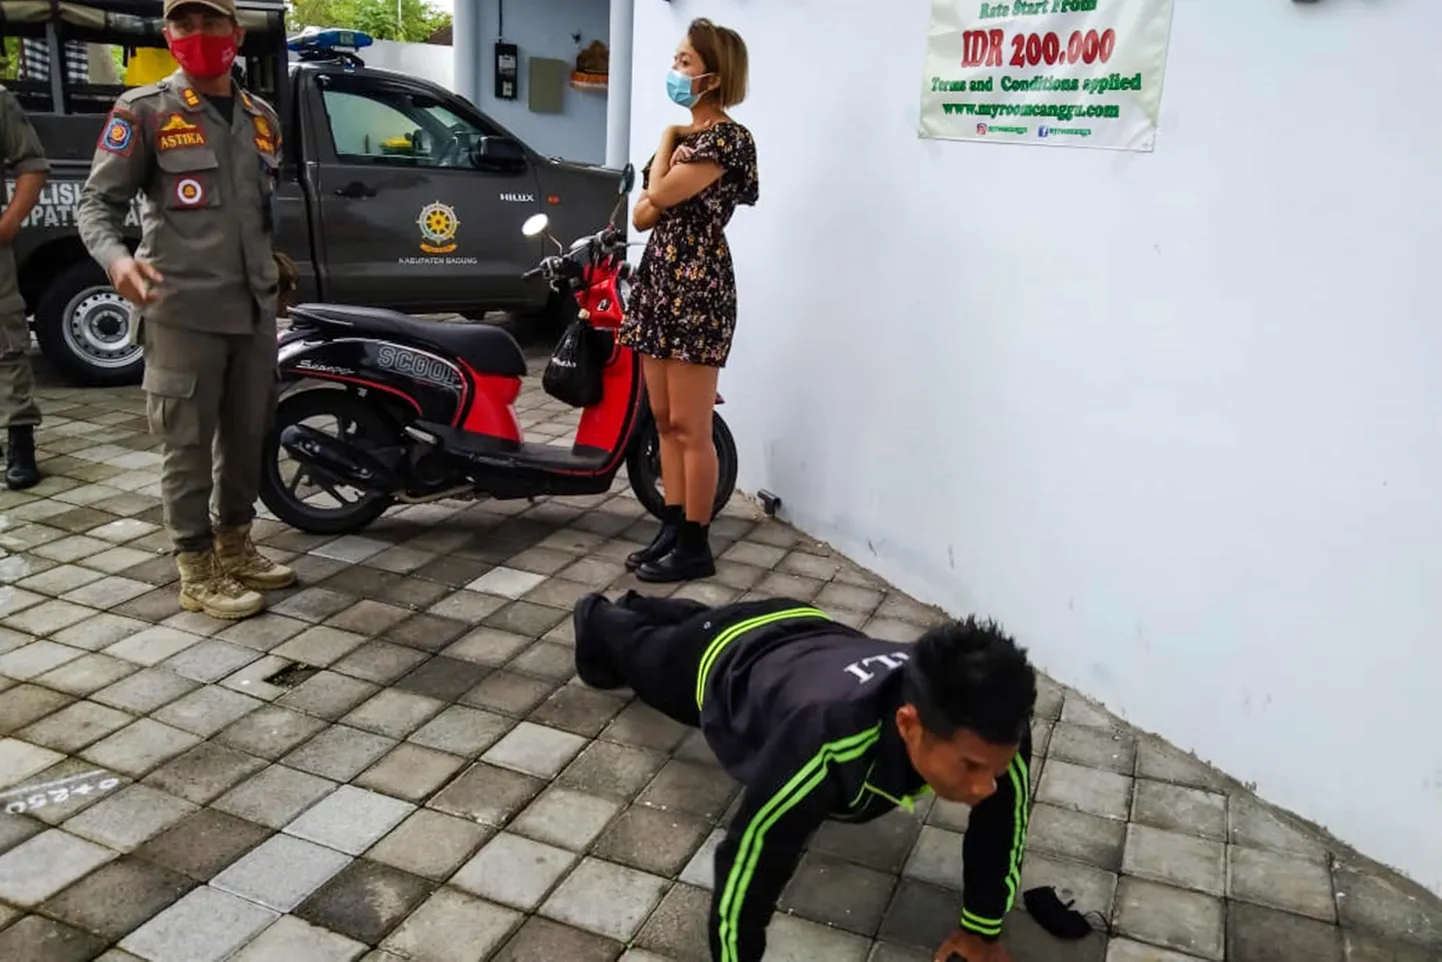 Reeglite rikkumise eest karistatakse Bali saarel kätekõverdustega.